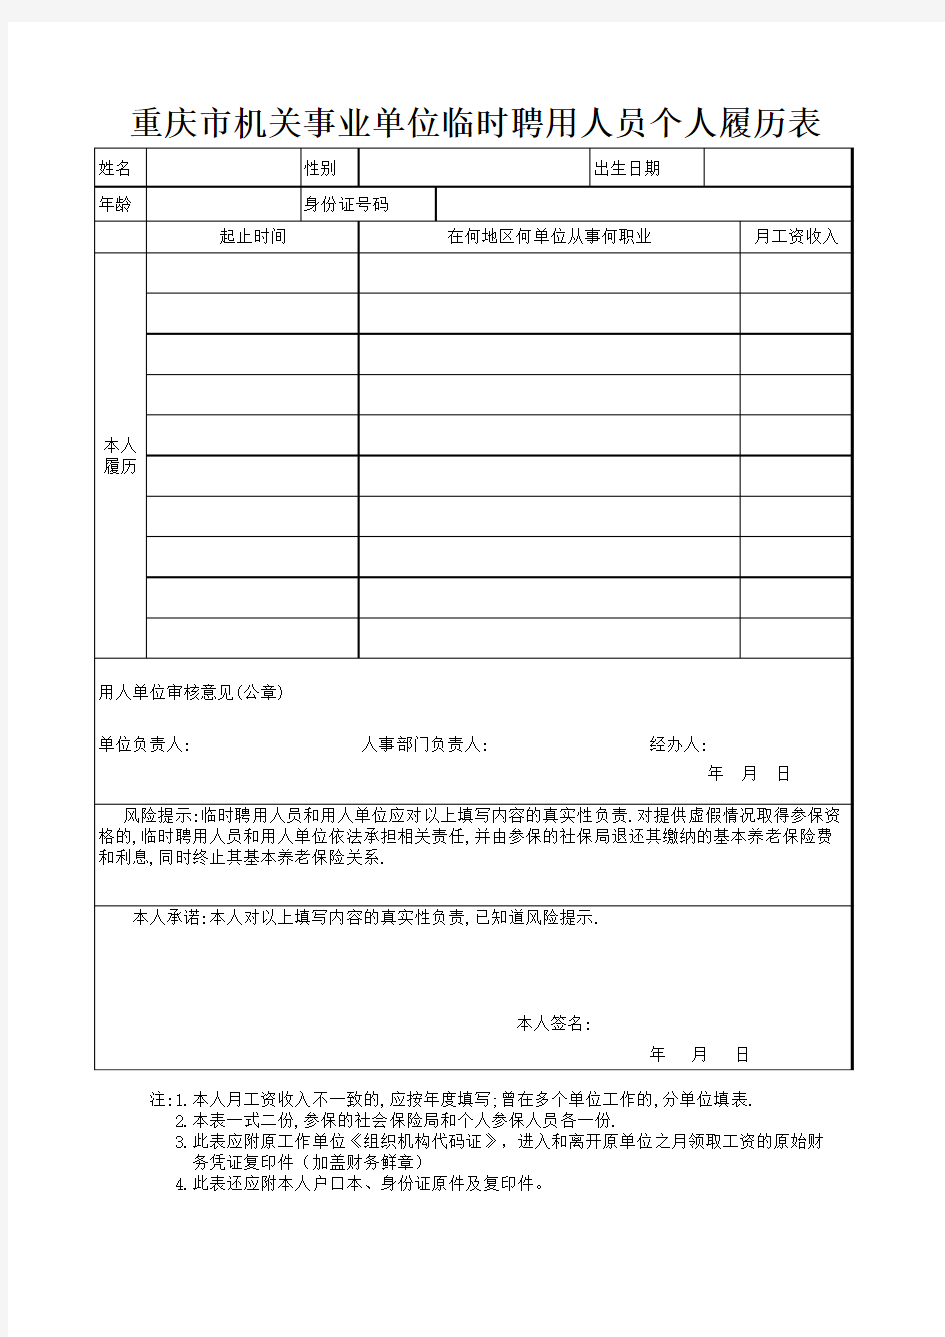 重庆市江北区机关事业单位临时聘用人员个人履历表